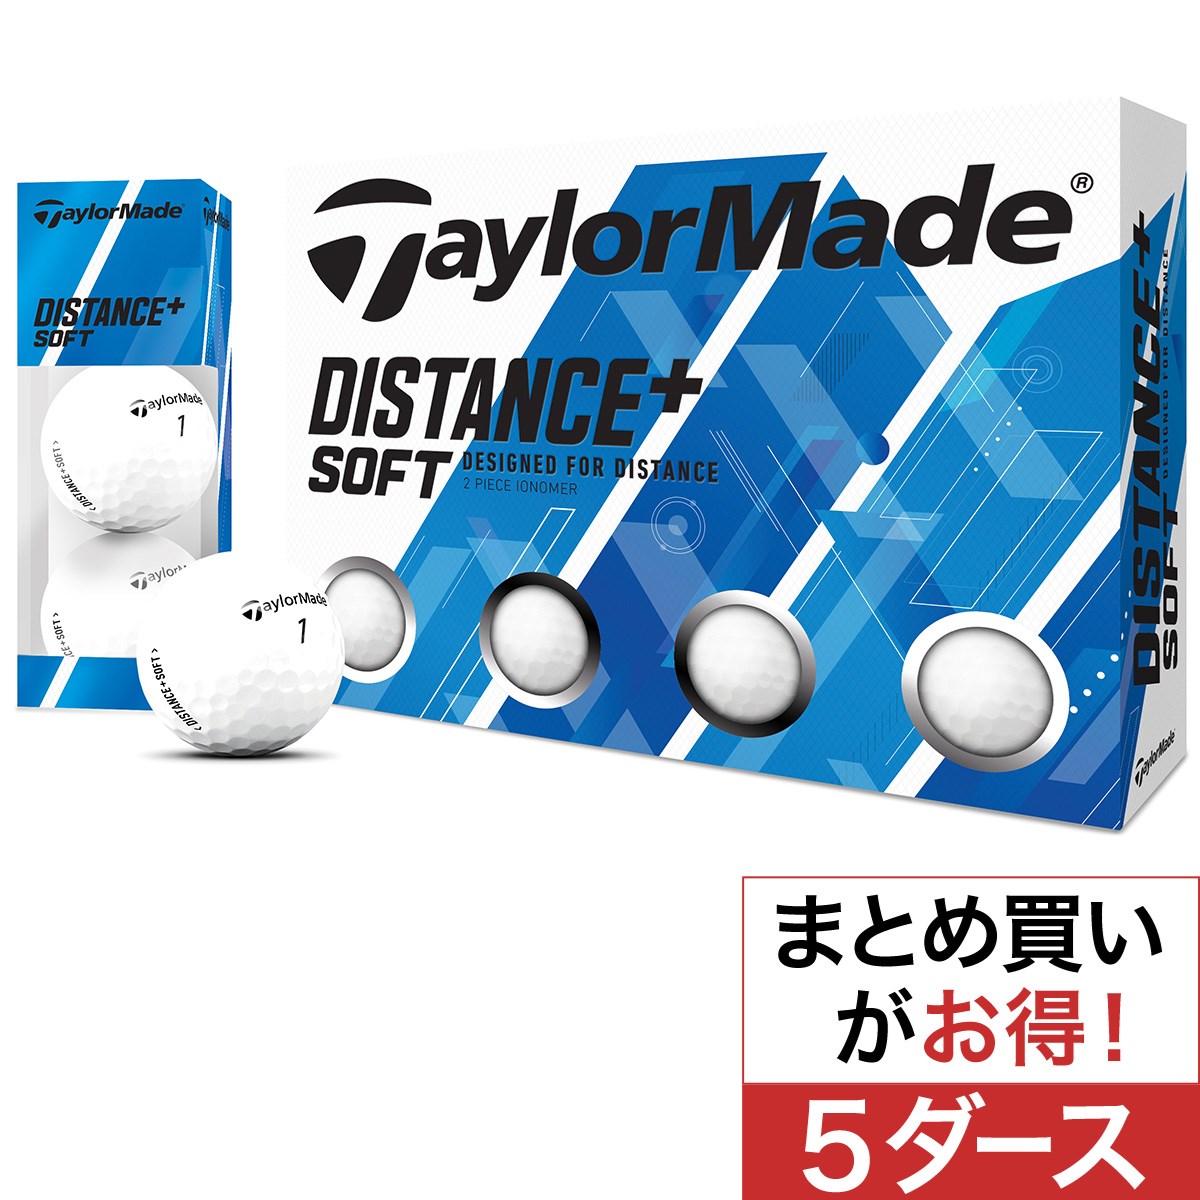 テーラーメイド(Taylor Made) Distance+Soft ボール 5ダースセット 